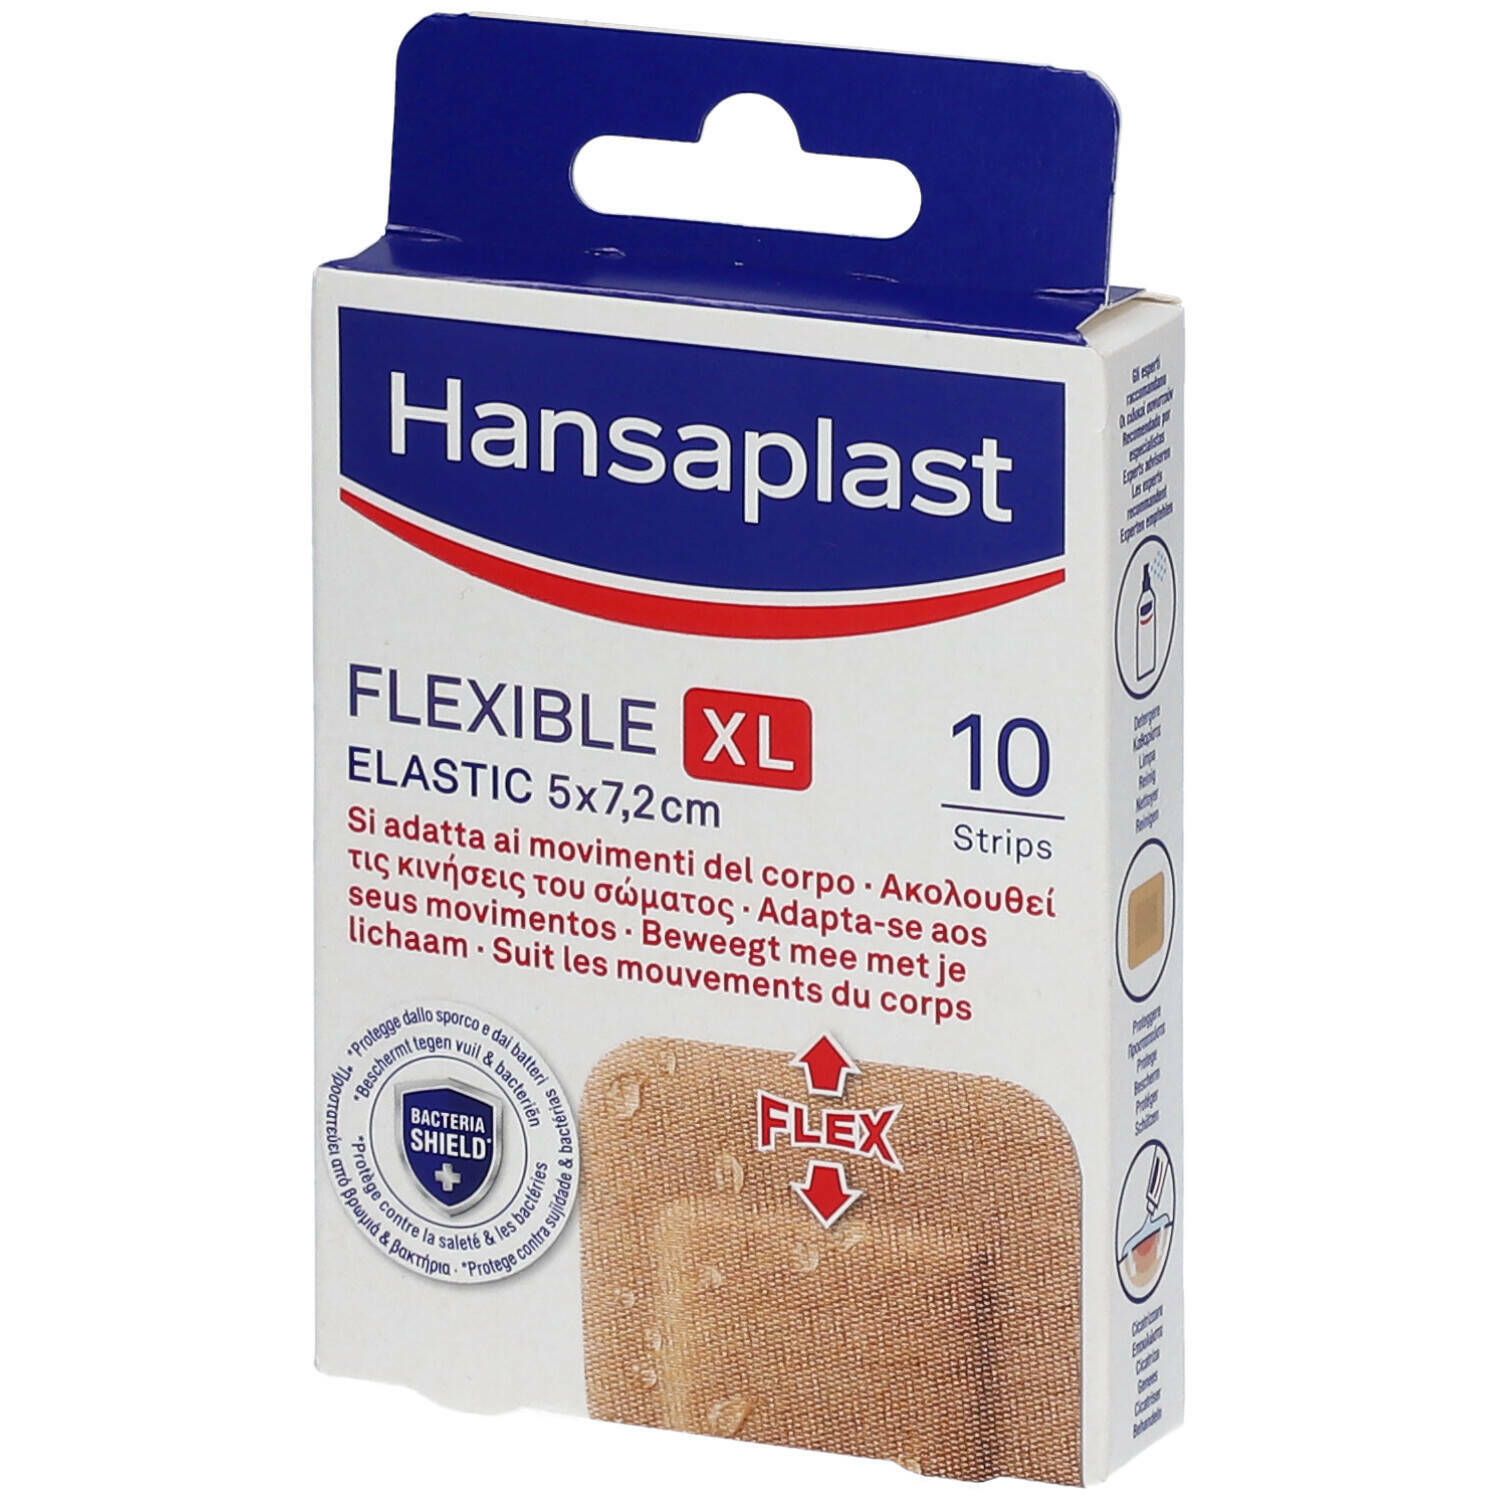 Hansaplast Elastic Flexible XL Pansements 5 x 7,2 cm